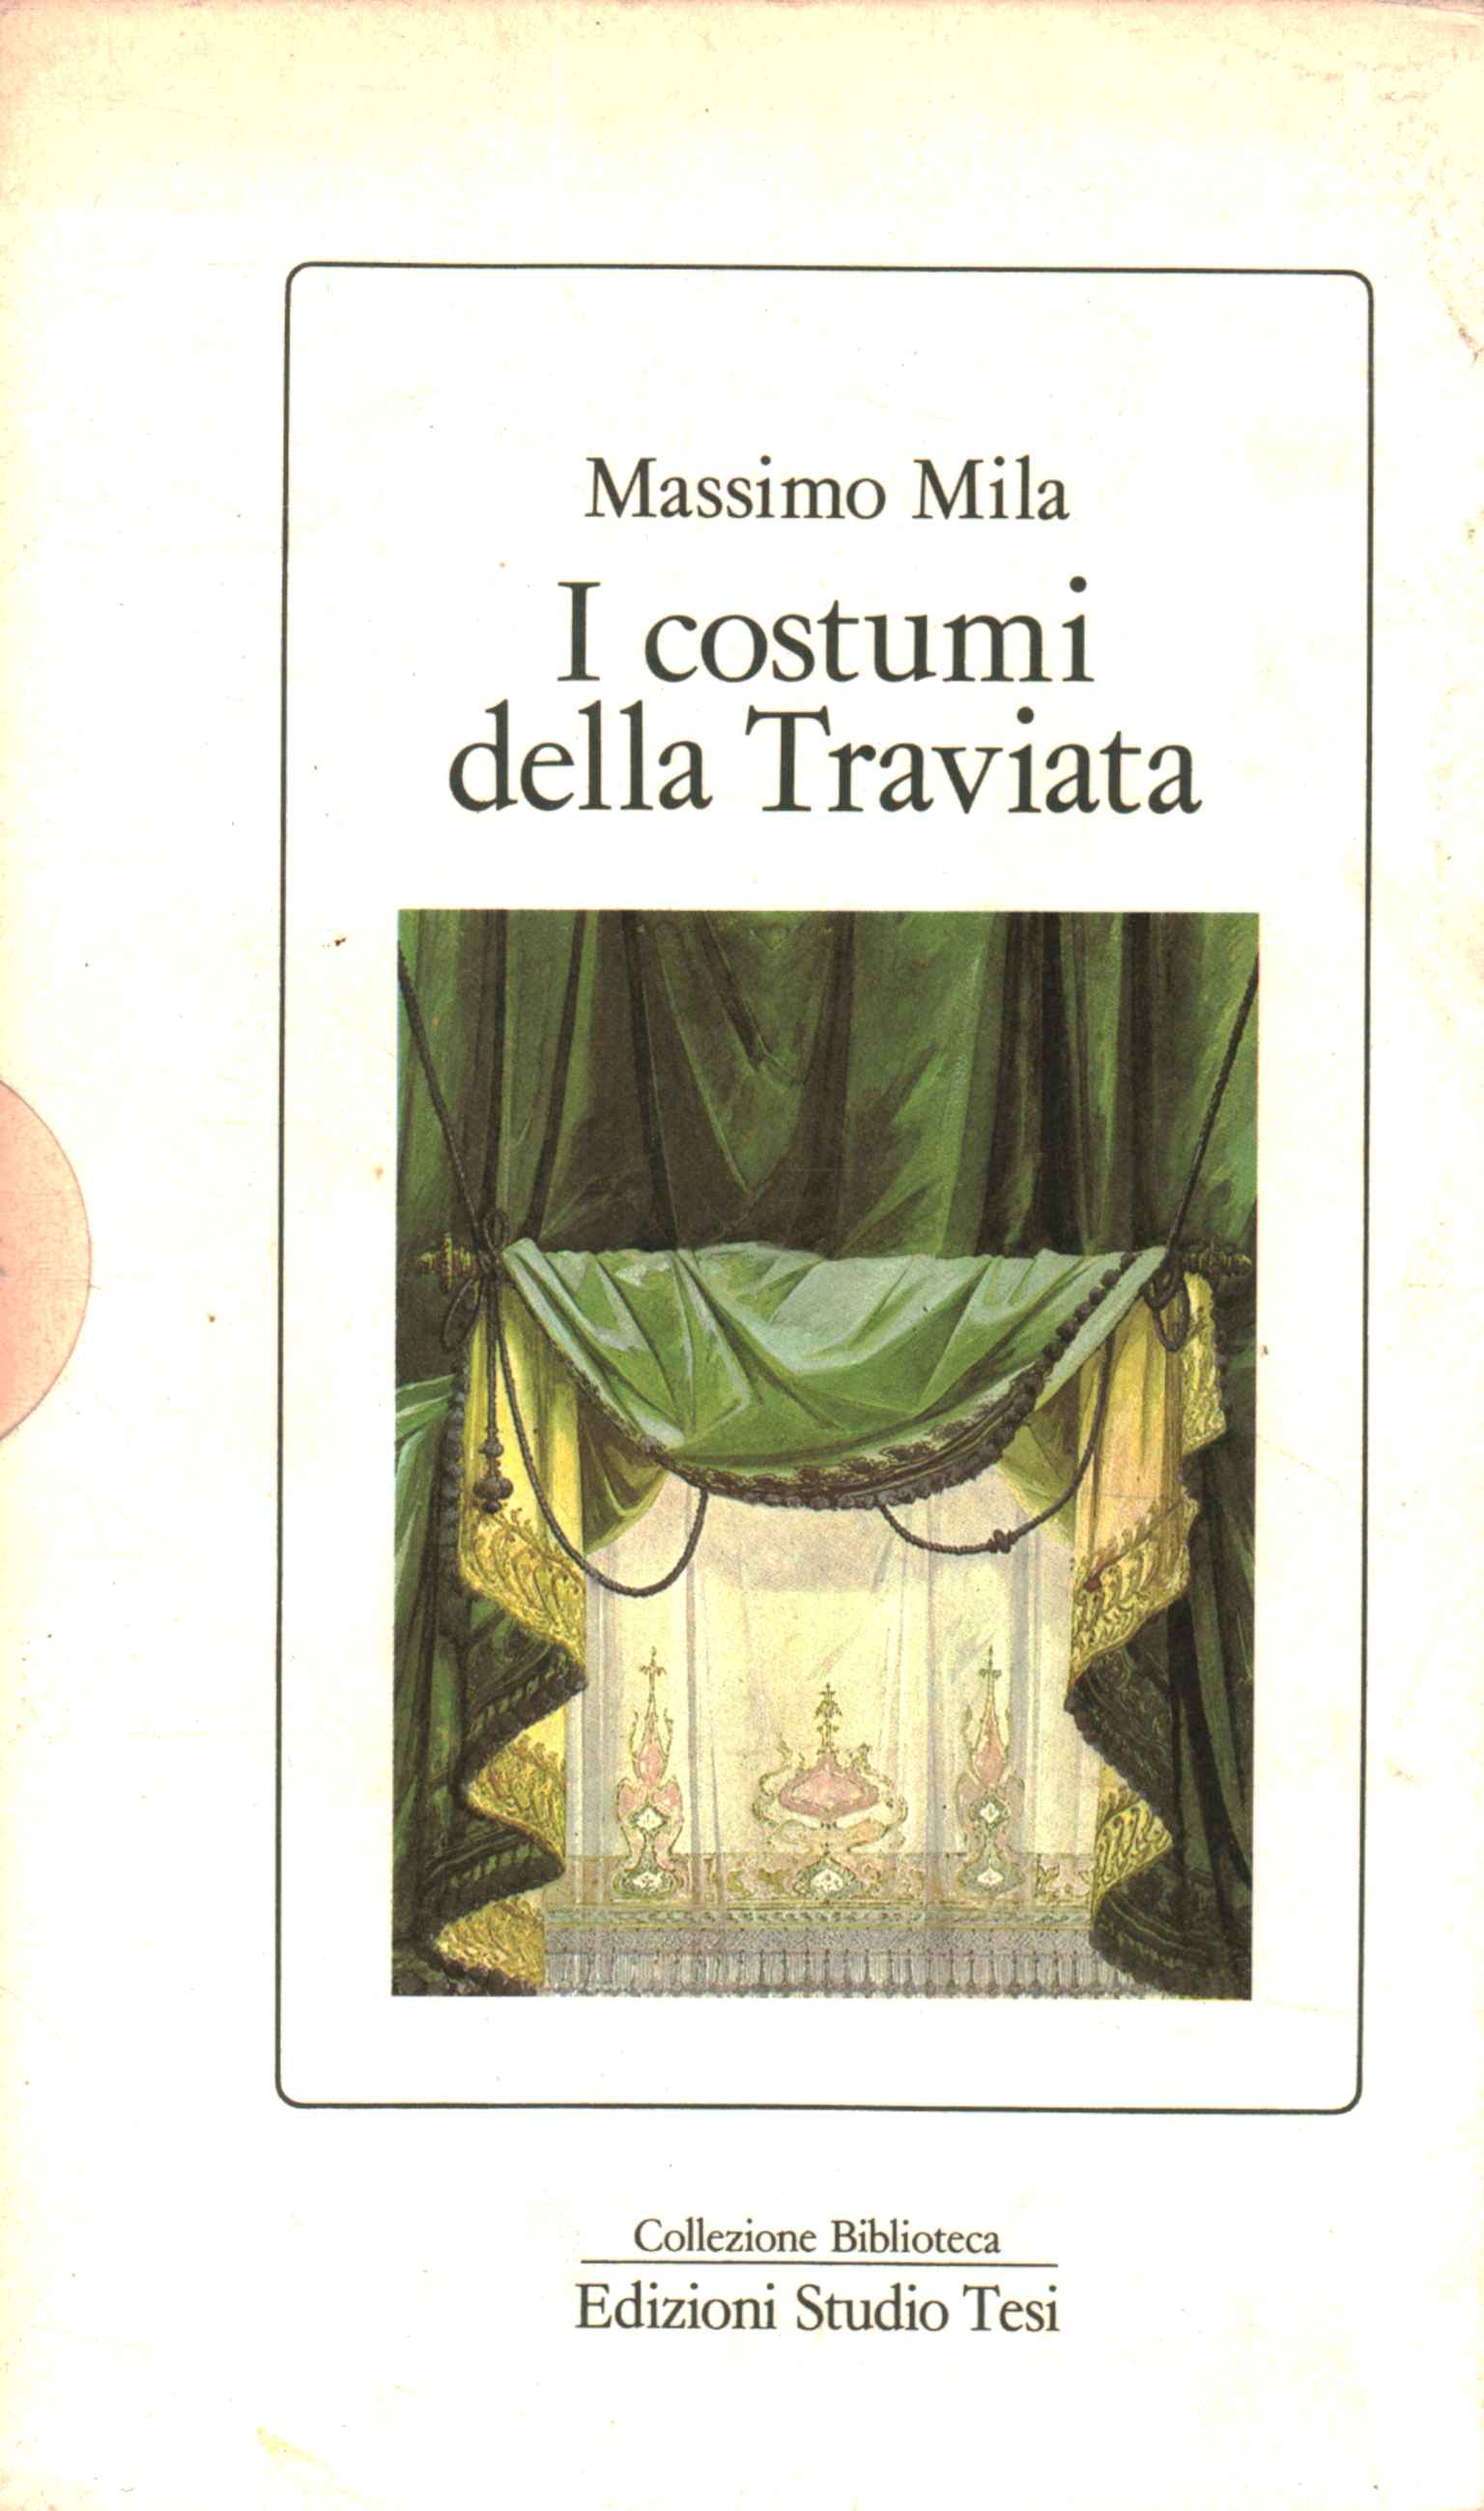 El vestuario de La Traviata